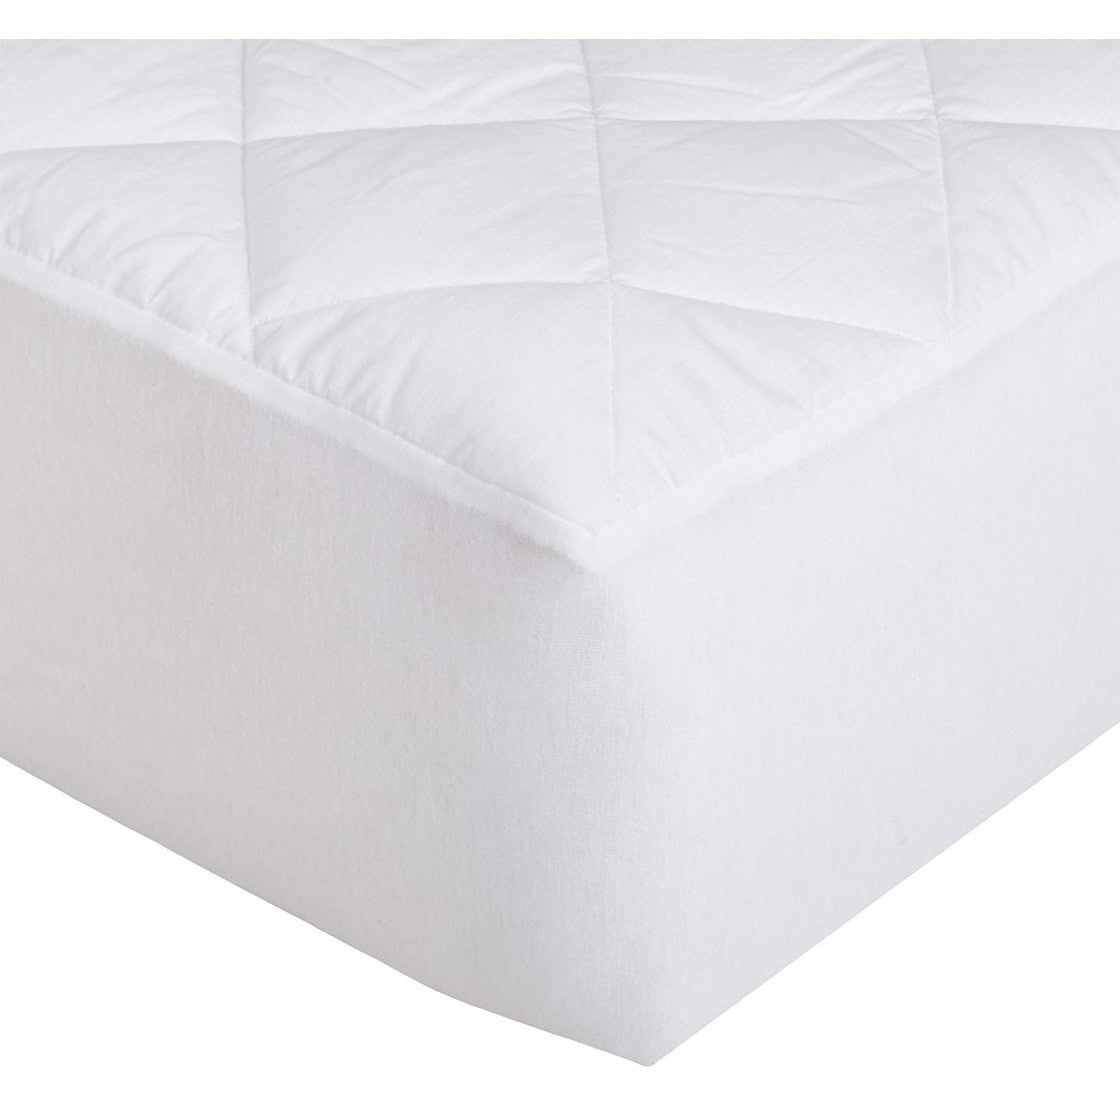 Protector de colchón marca Pandora modelo Acolchado | Impermeable